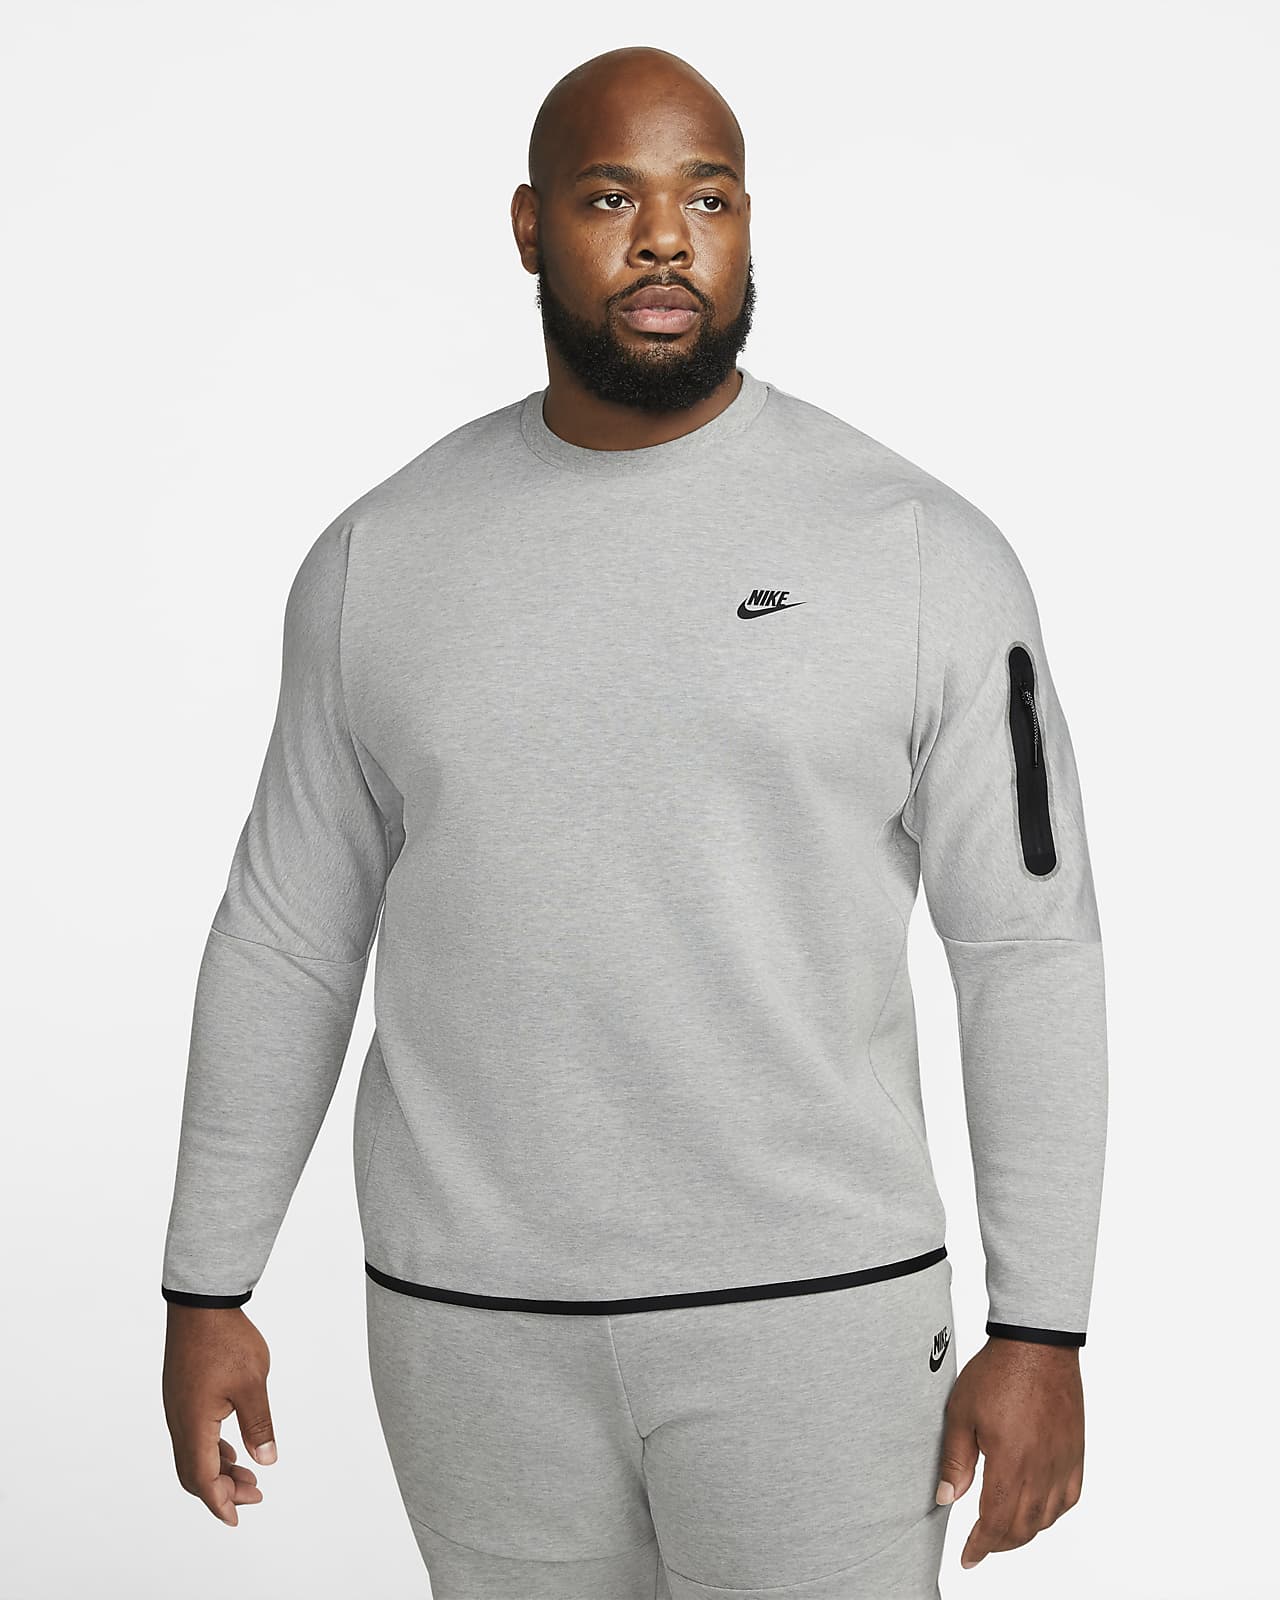 Nike Sportswear Tech Fleece Men's Sweatshirt. LU